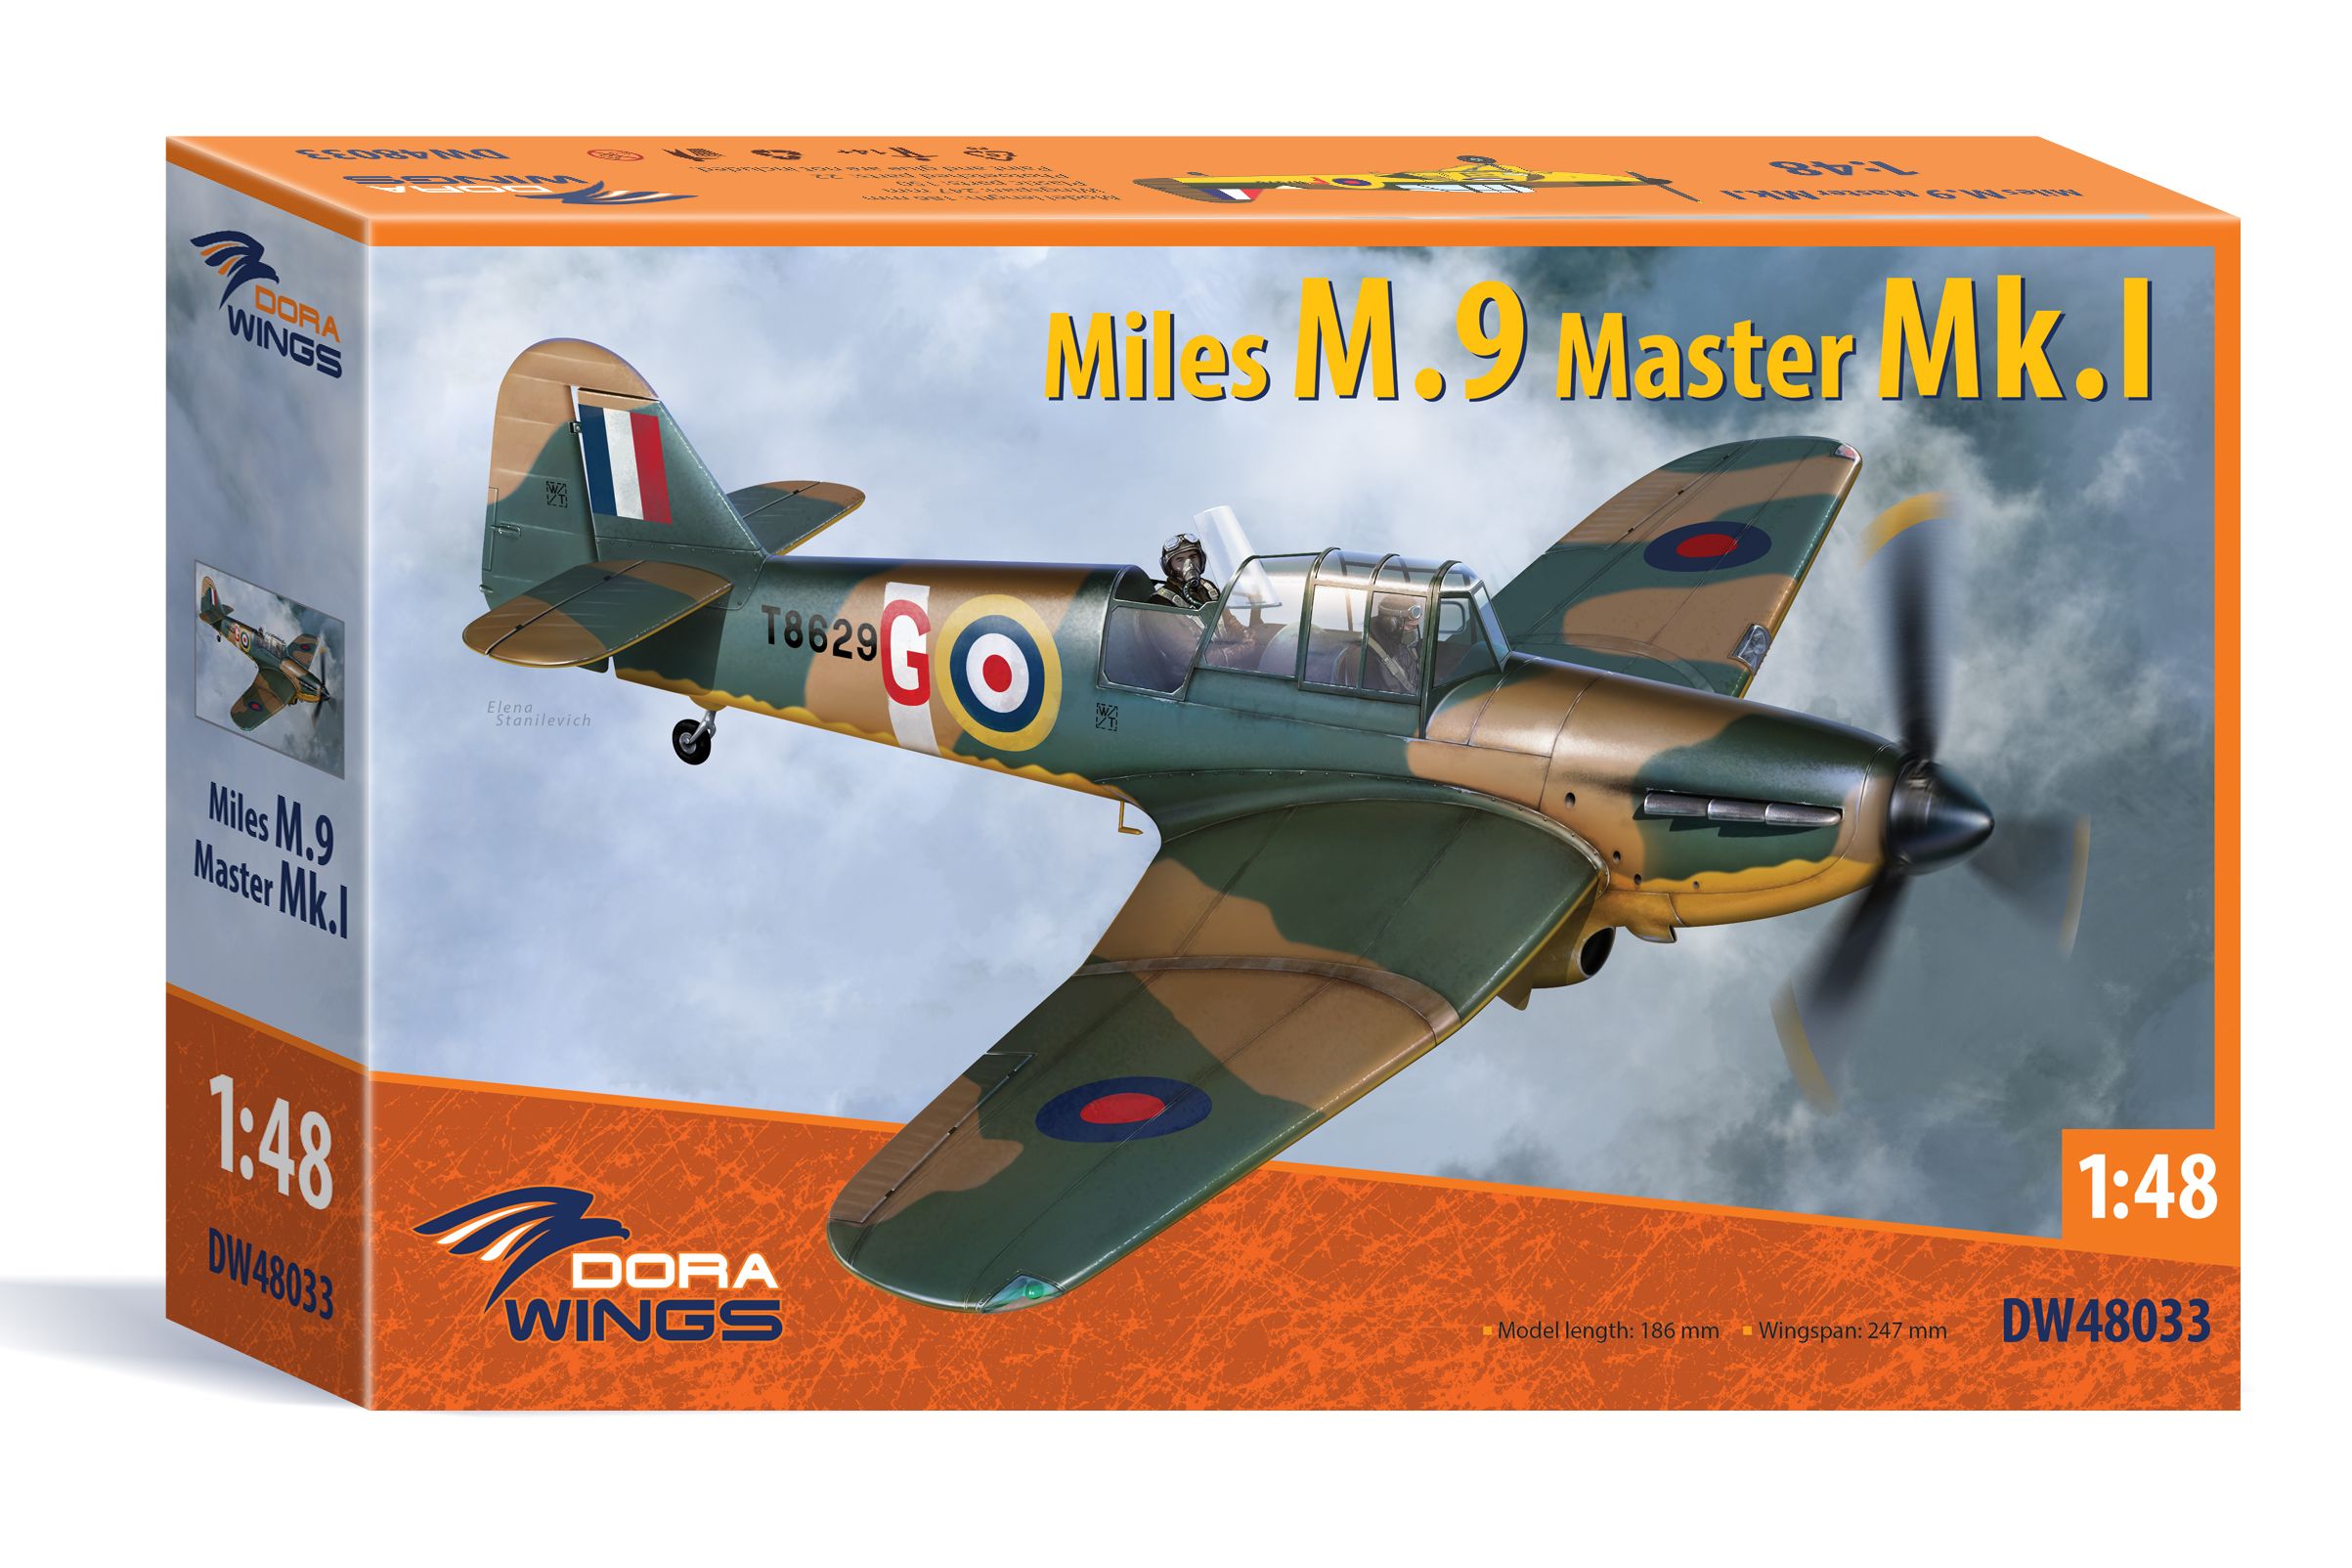 Miles M.9 Master